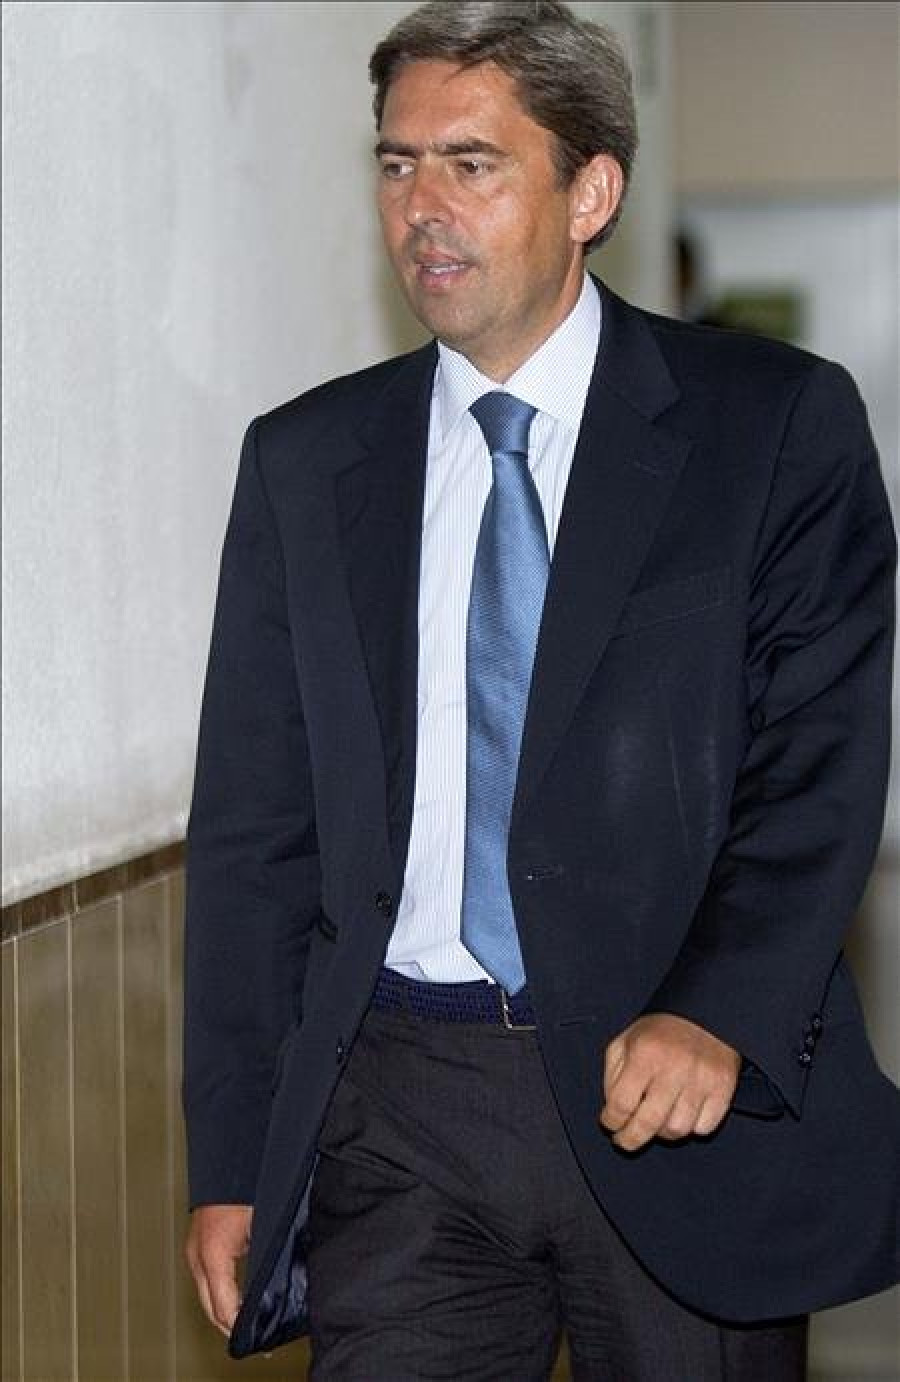 El exvicepresidente valenciano Vicente Rambla, imputado en Gürtel, deja su escaño